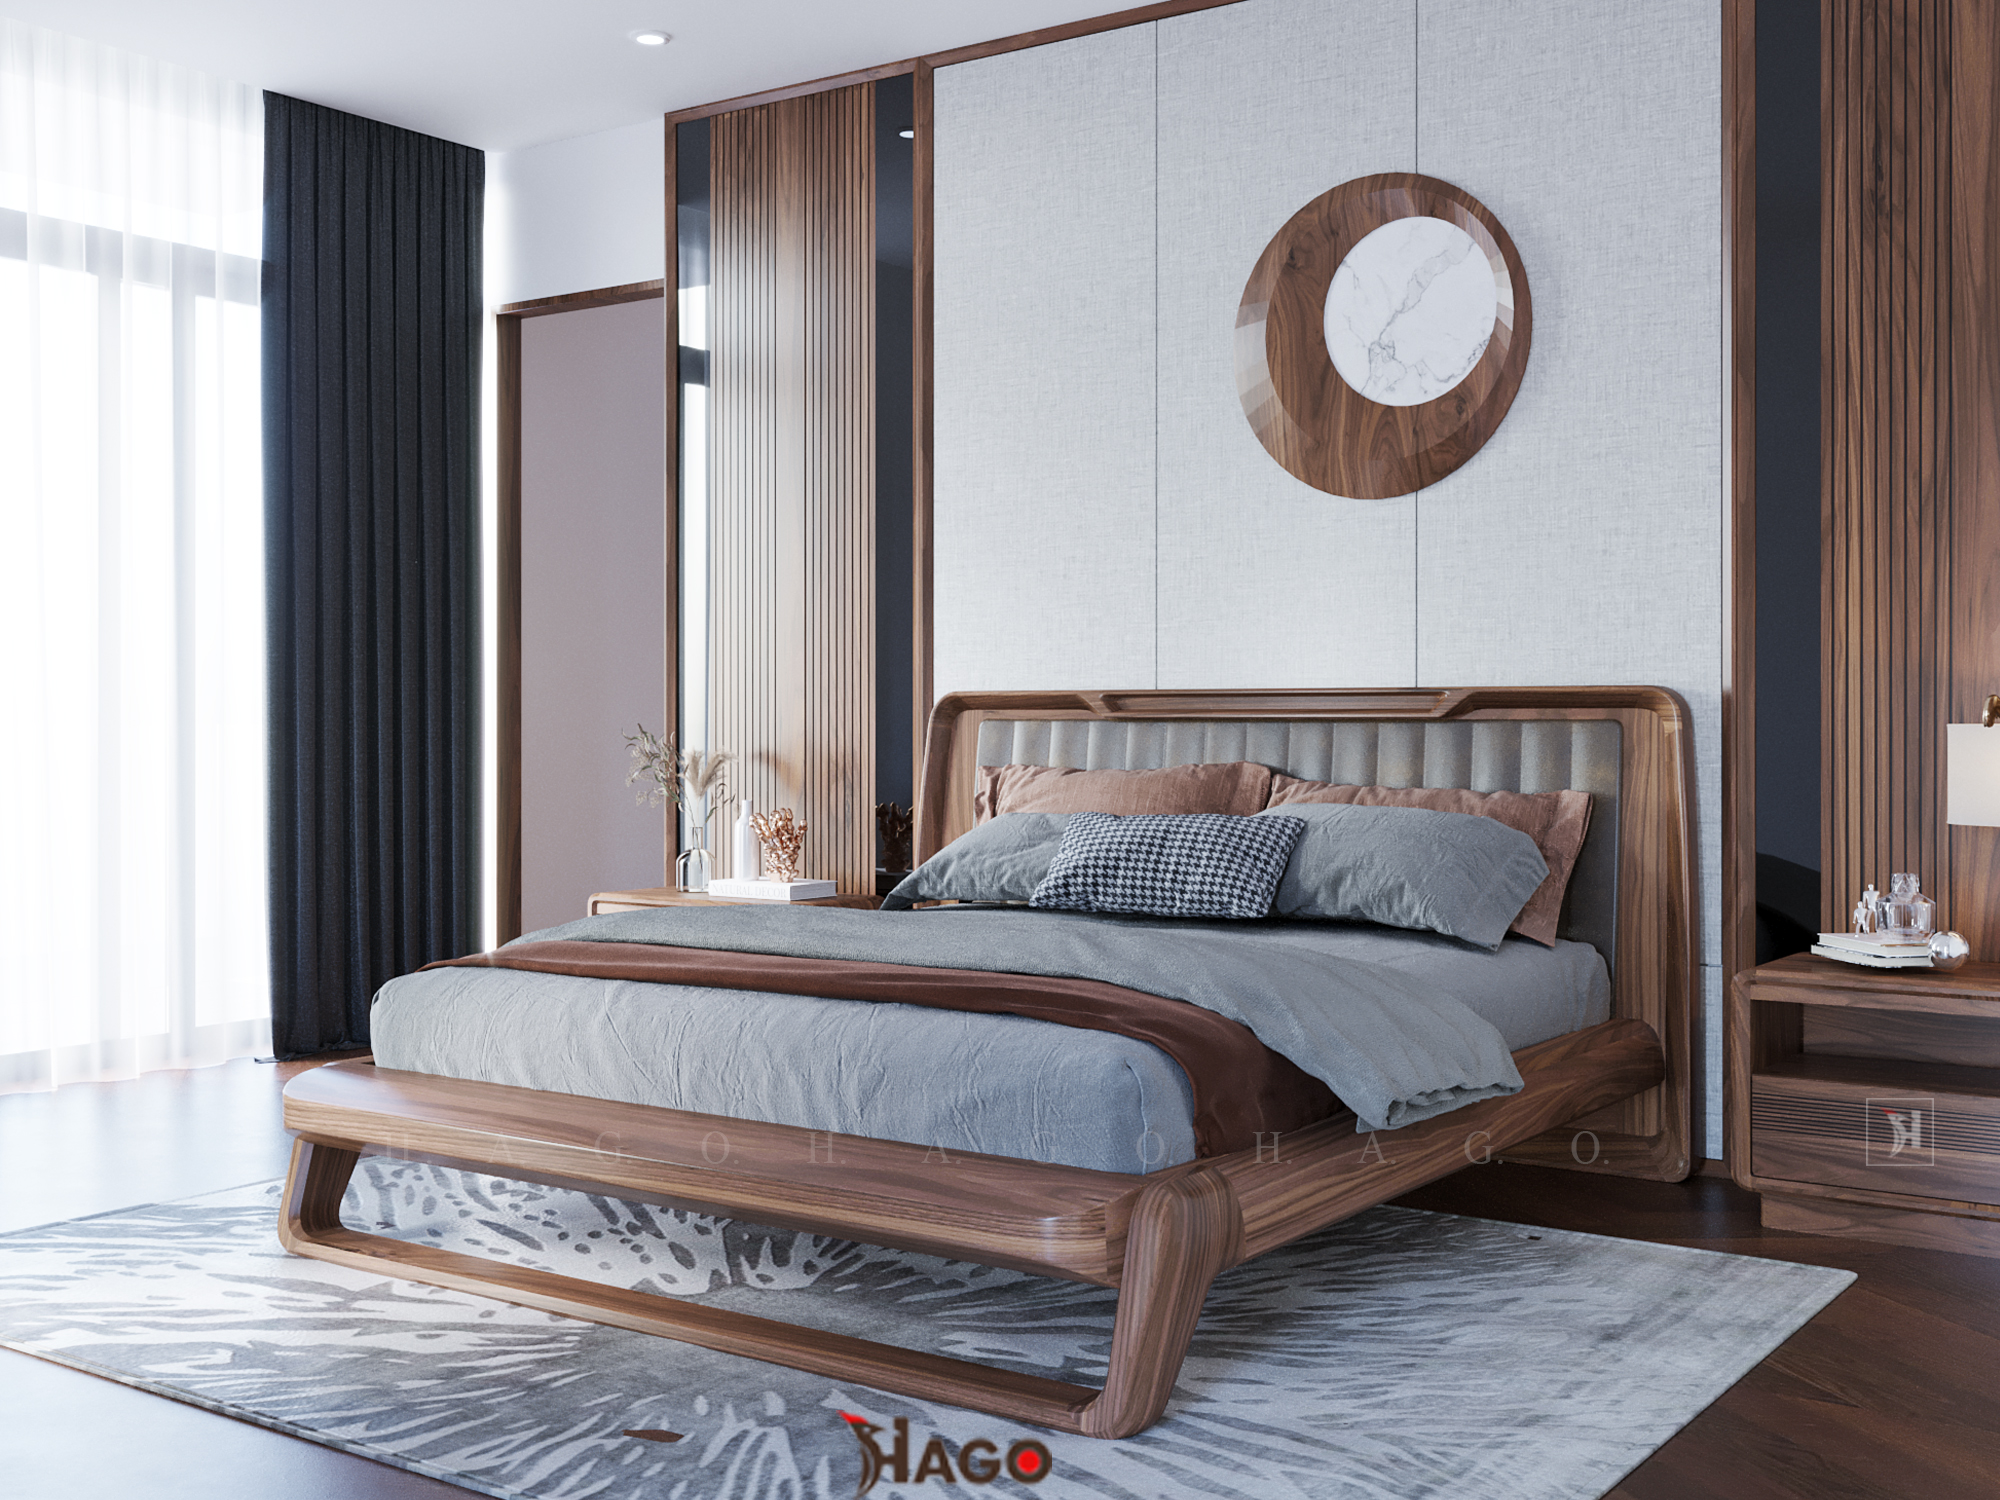 Giường ngủ gỗ sồi mẫu phòng ngủ hiện đại 2024 là sự lựa chọn tuyệt vời để mang đến không gian ngủ sang trọng, đẳng cấp và tiện nghi. Với chất liệu gỗ sồi tự nhiên cao cấp, giường ngủ sẽ bền đẹp và tạo cảm giác ấm cúng, gần gũi với thiên nhiên. Với thiết kế đẹp mắt, giường ngủ gỗ sồi 2024 là điểm nhấn thu hút mọi ánh nhìn trong phòng ngủ của bạn.